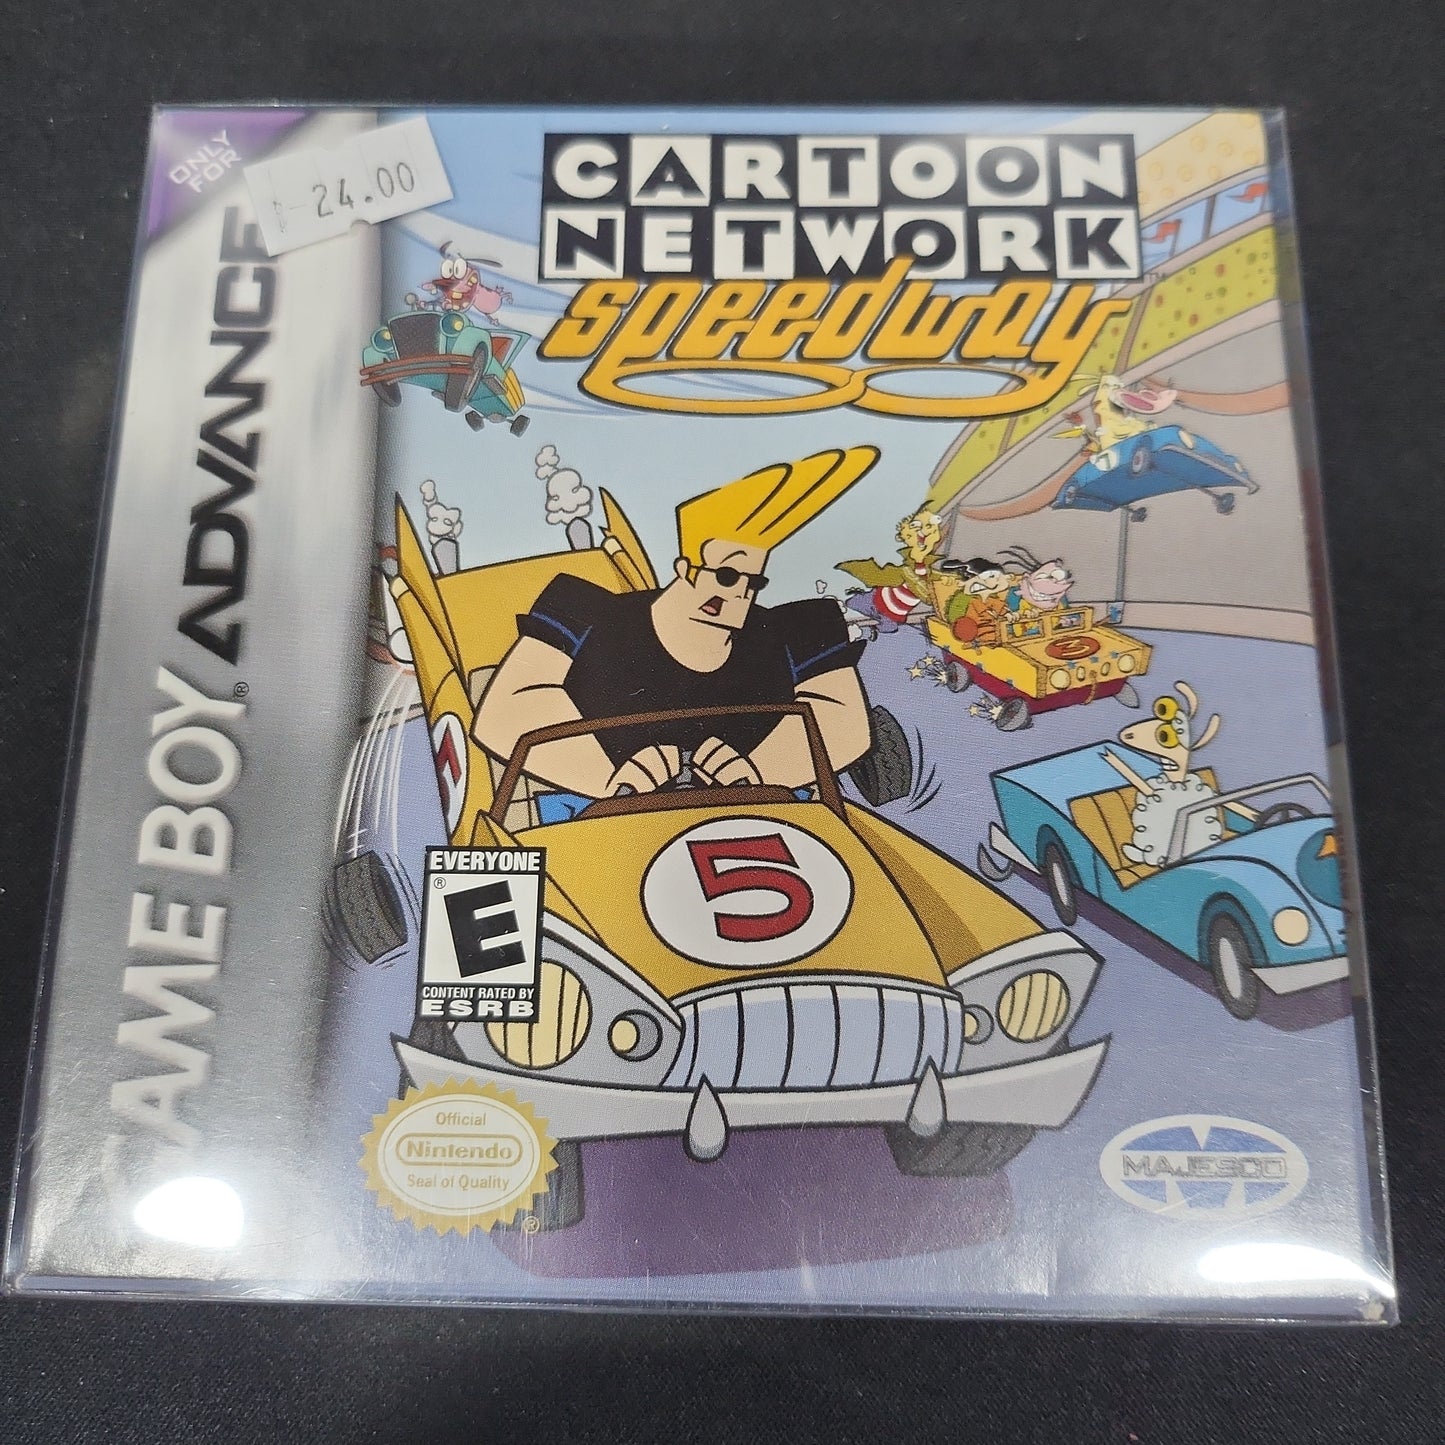 Cartoon network speedway cib